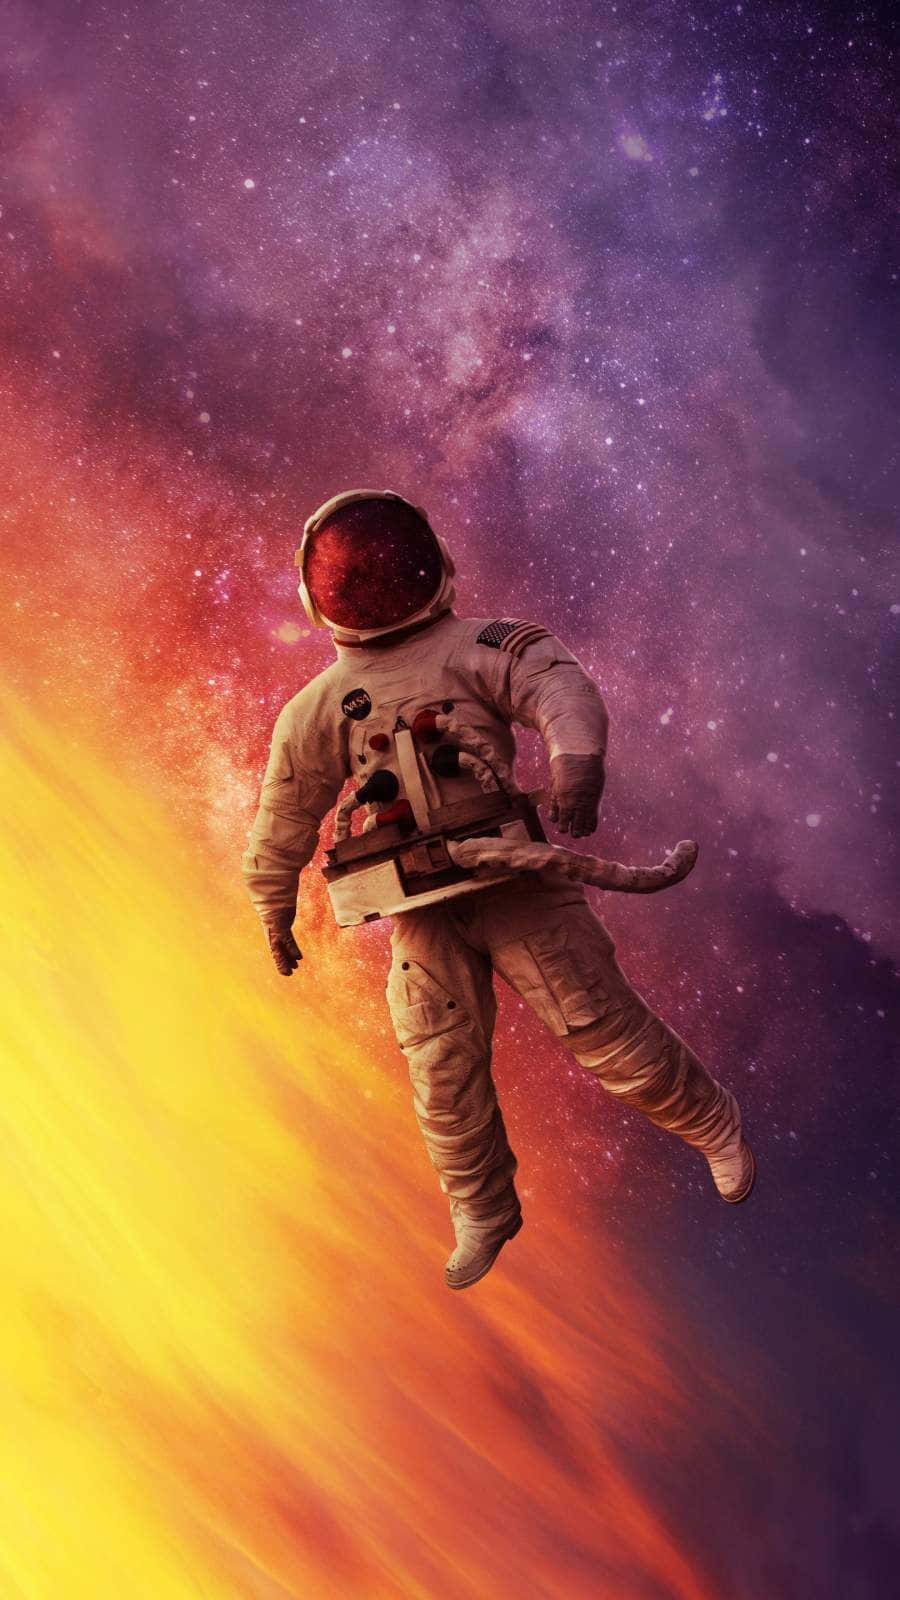 Astronautaatrapado En El Espacio En El Teléfono. Fondo de pantalla